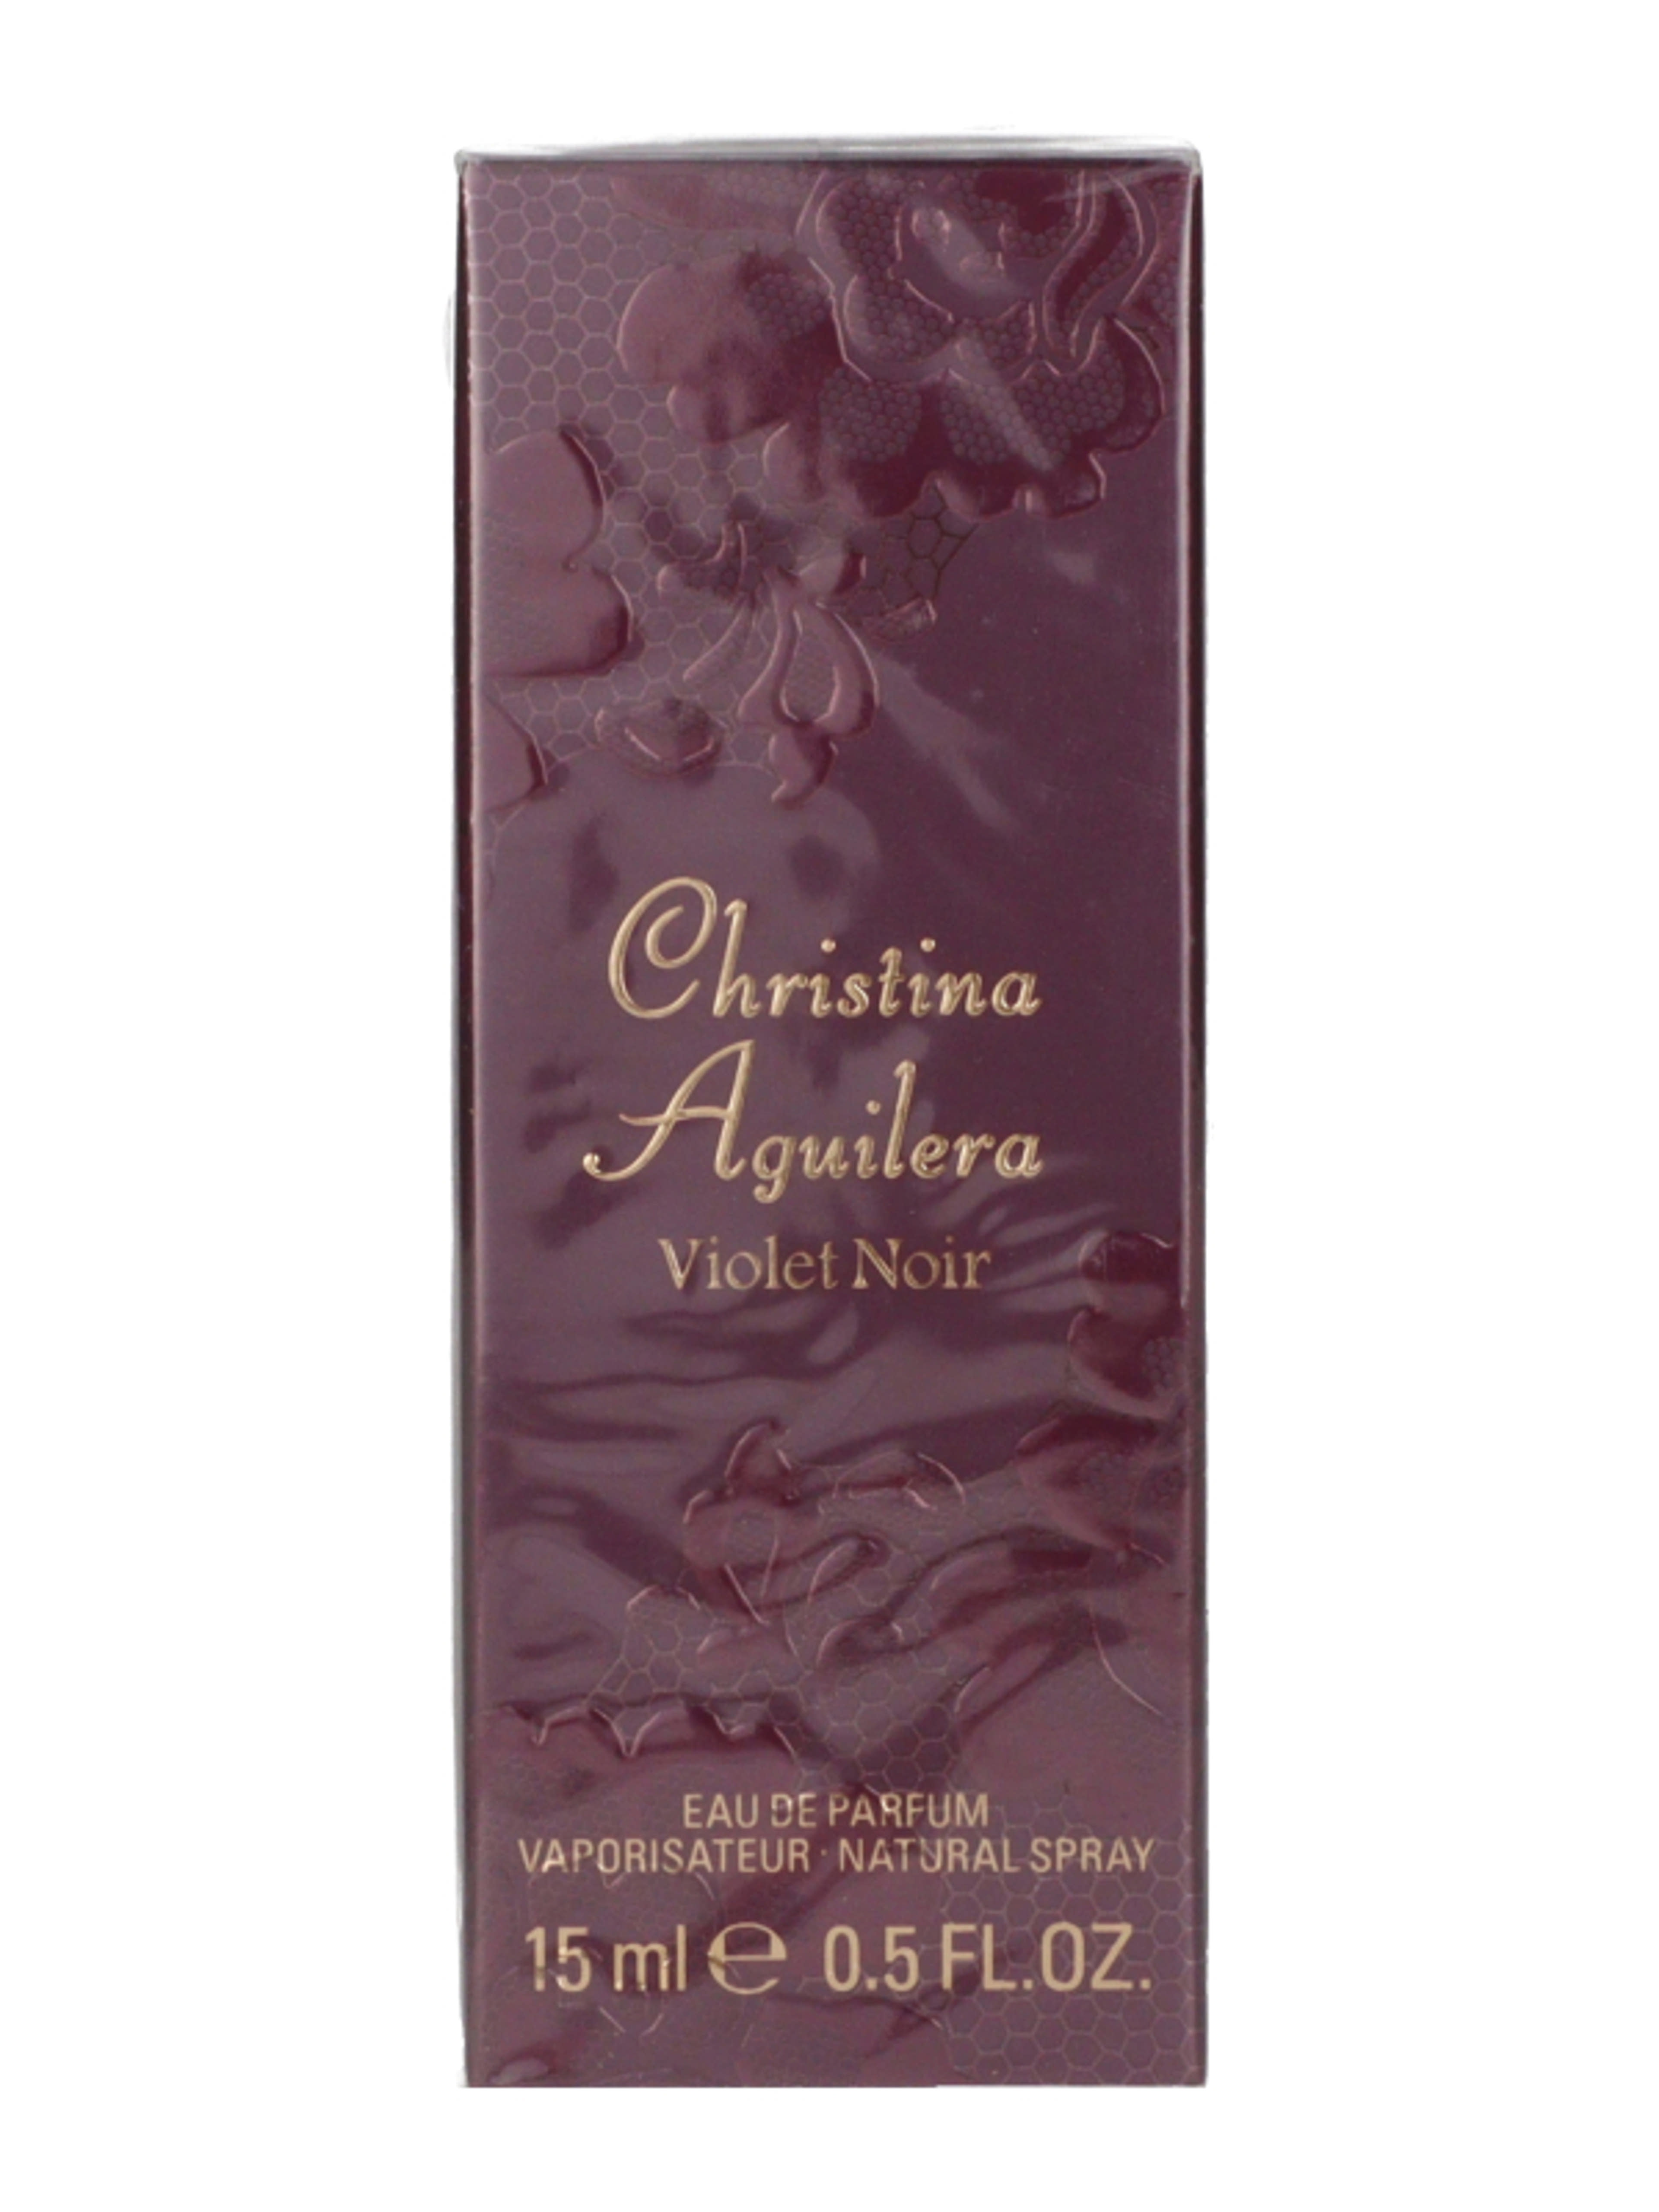 Christina Aguiera Violet Noir Eau de Parfum - 15 ml